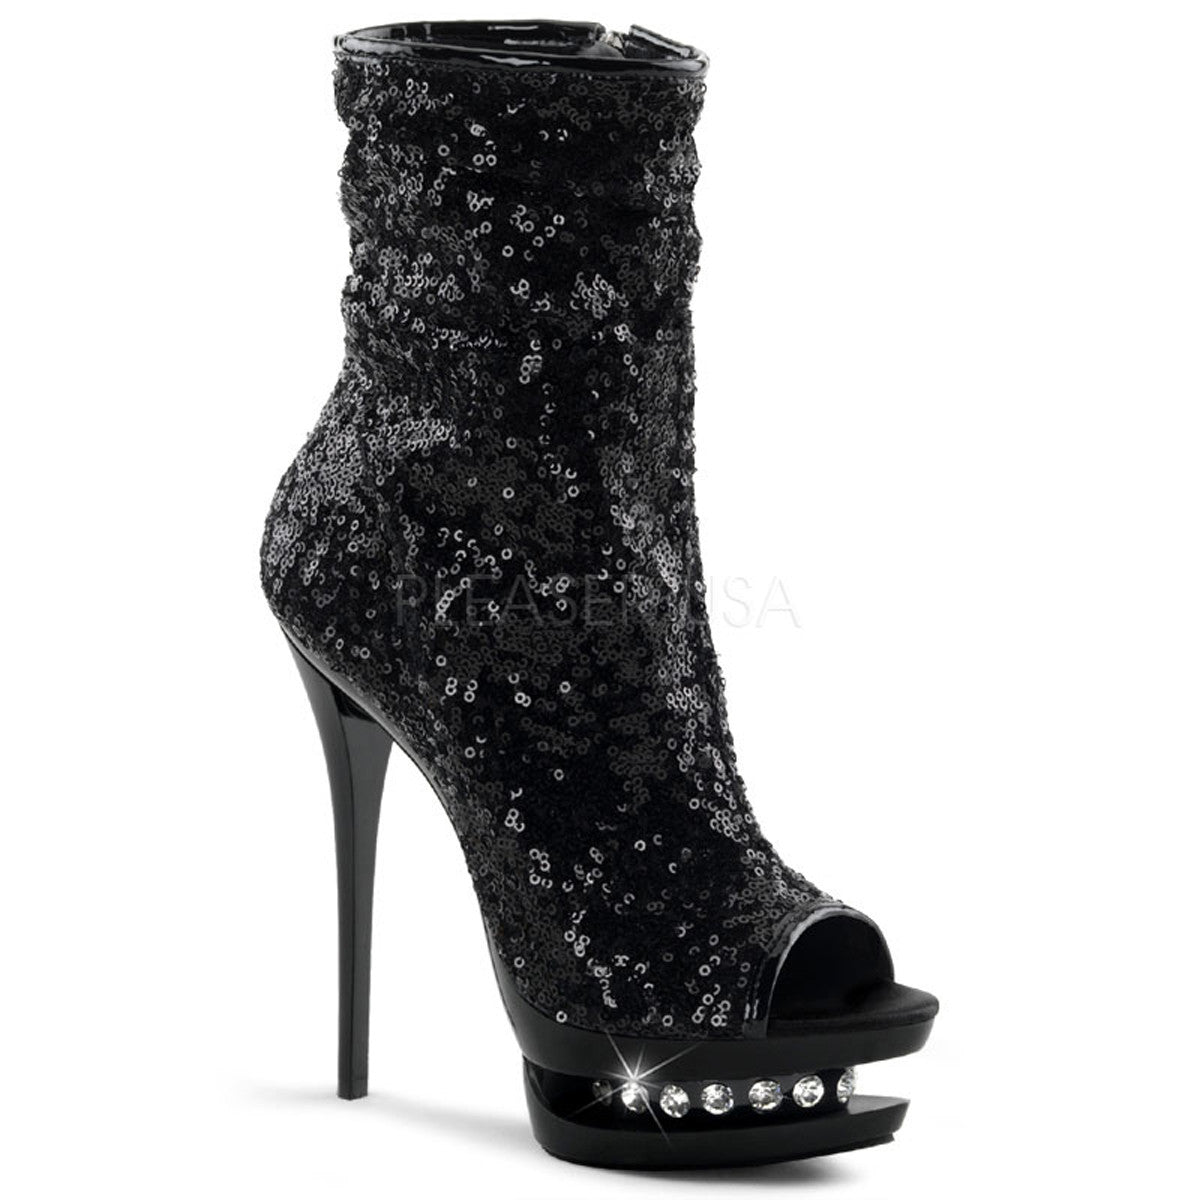 PLEASER BLONDIE-R-1008 Black Sequins-Black Ankle Boots - Shoecup.com - 1